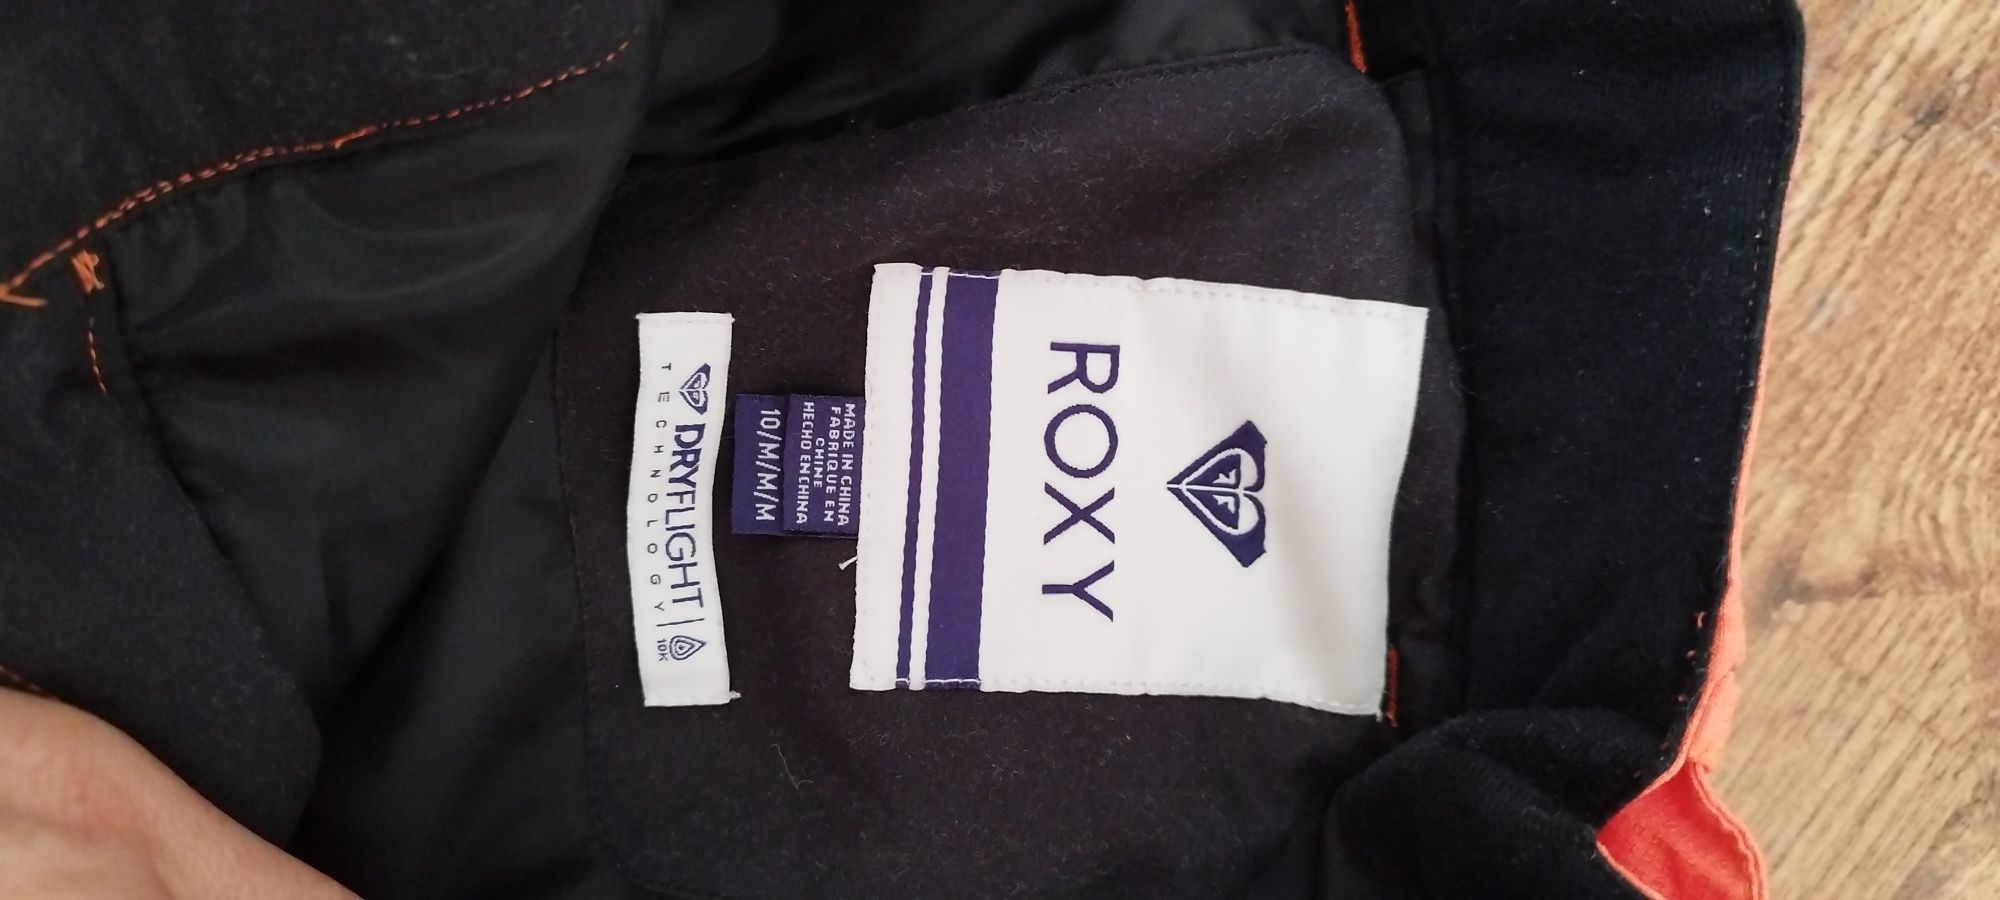 Spodnie snowboardowe Roxy